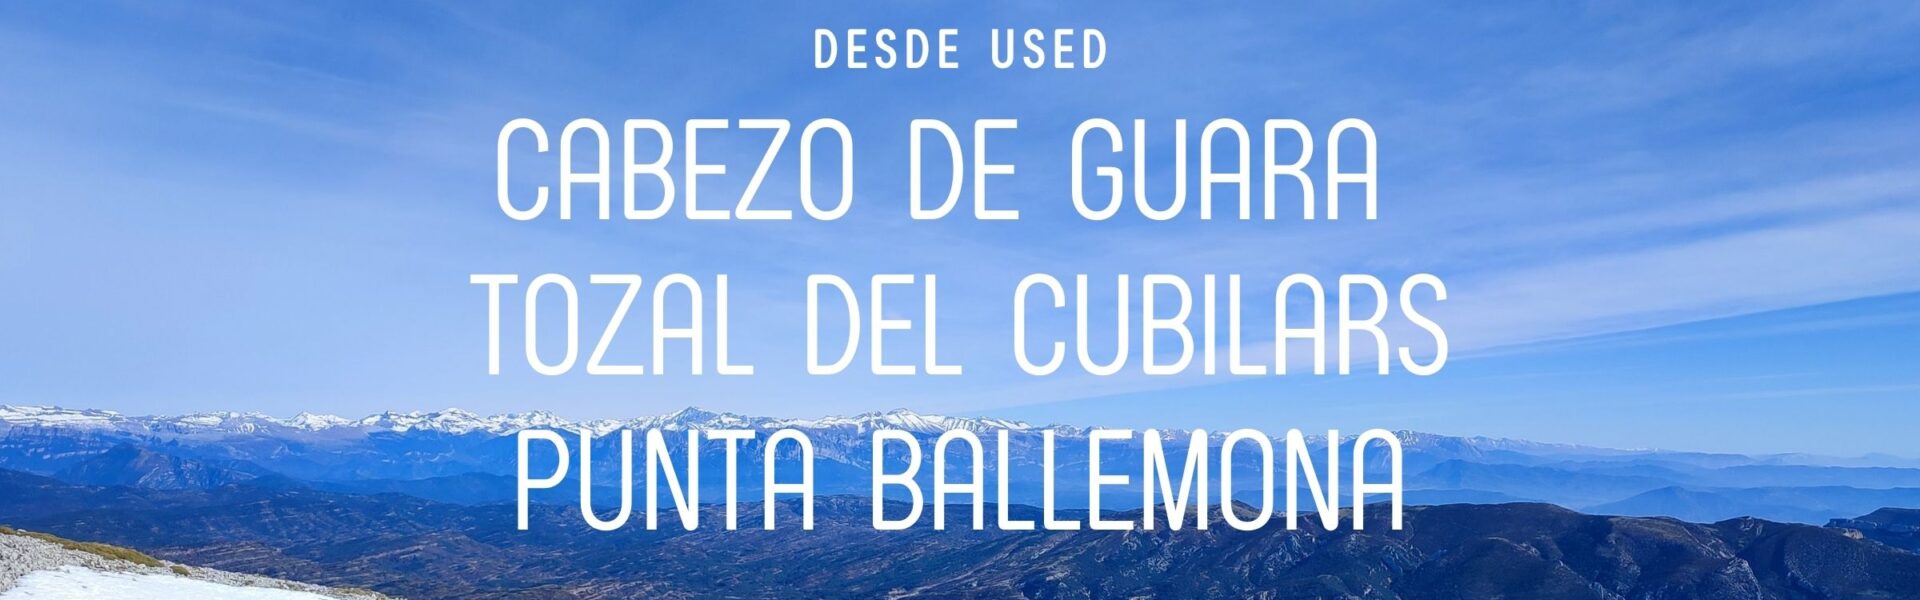 Cabezo de Guara – Tozal del Cubilars – Punta Ballemona